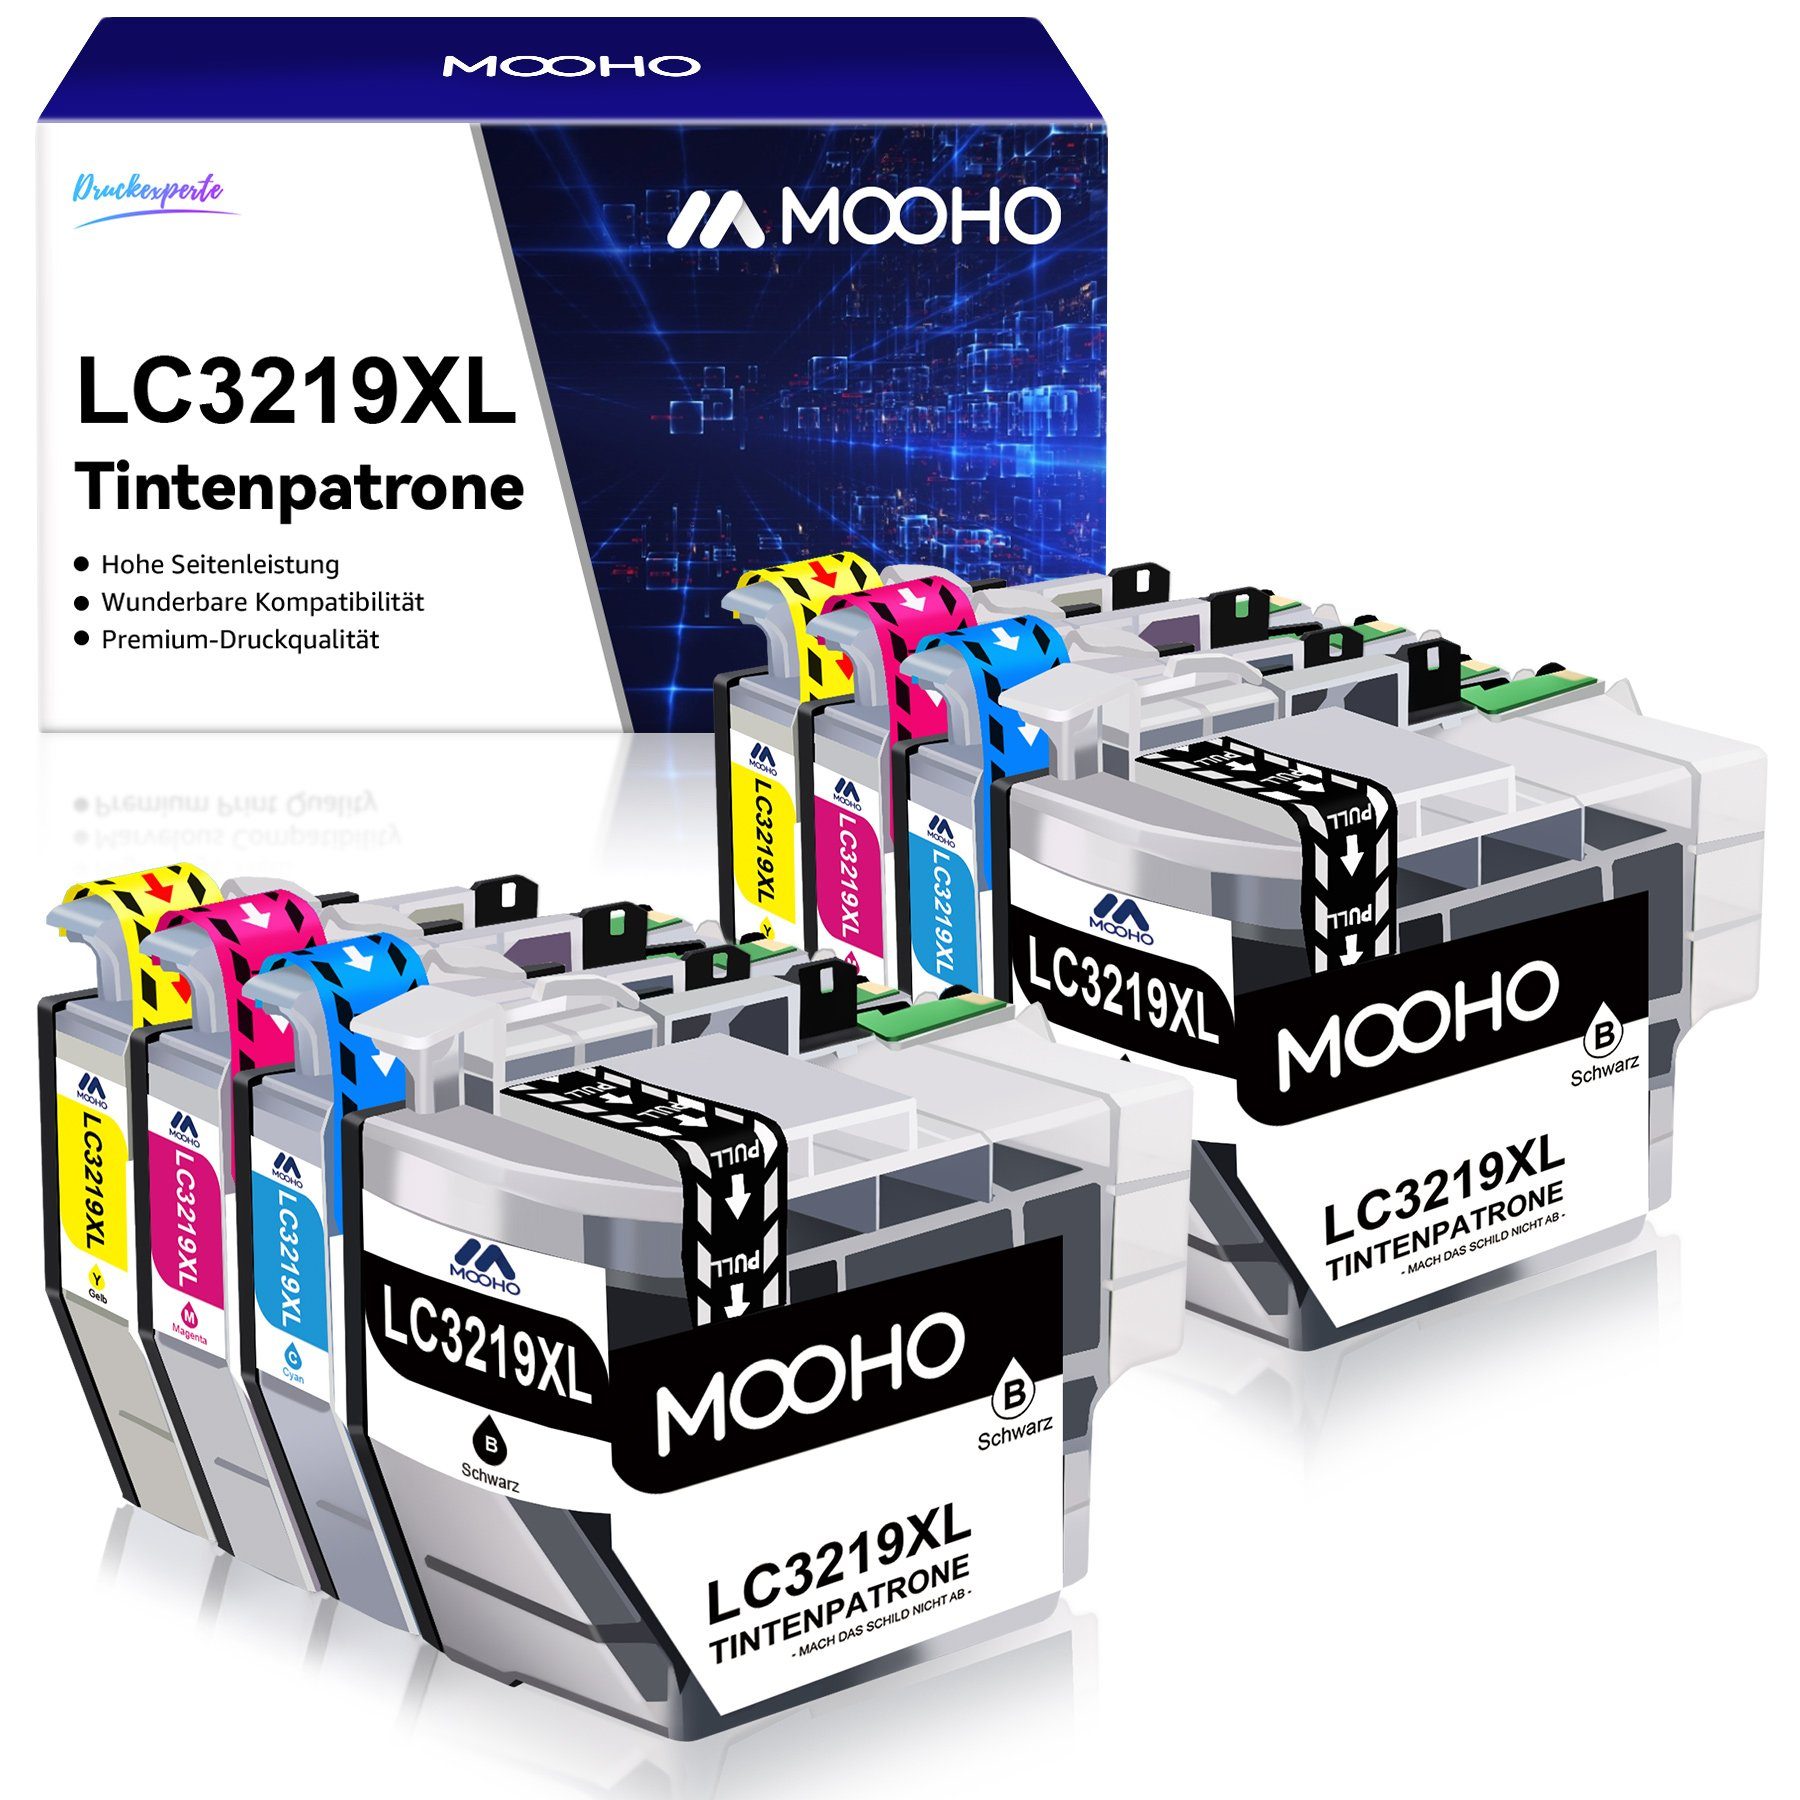 MOOHO LC 3219 XLErsatz für LC3219 XL LC3217 XL Tintenpatrone (MFC-J5330DW J5335DW J5730DW) 1x Schwarz, 1x Cyan, 1x Magenta, 1x Gelb-2x Schwarz, 2x Cyan, 2x Magenta, 2x Gelb